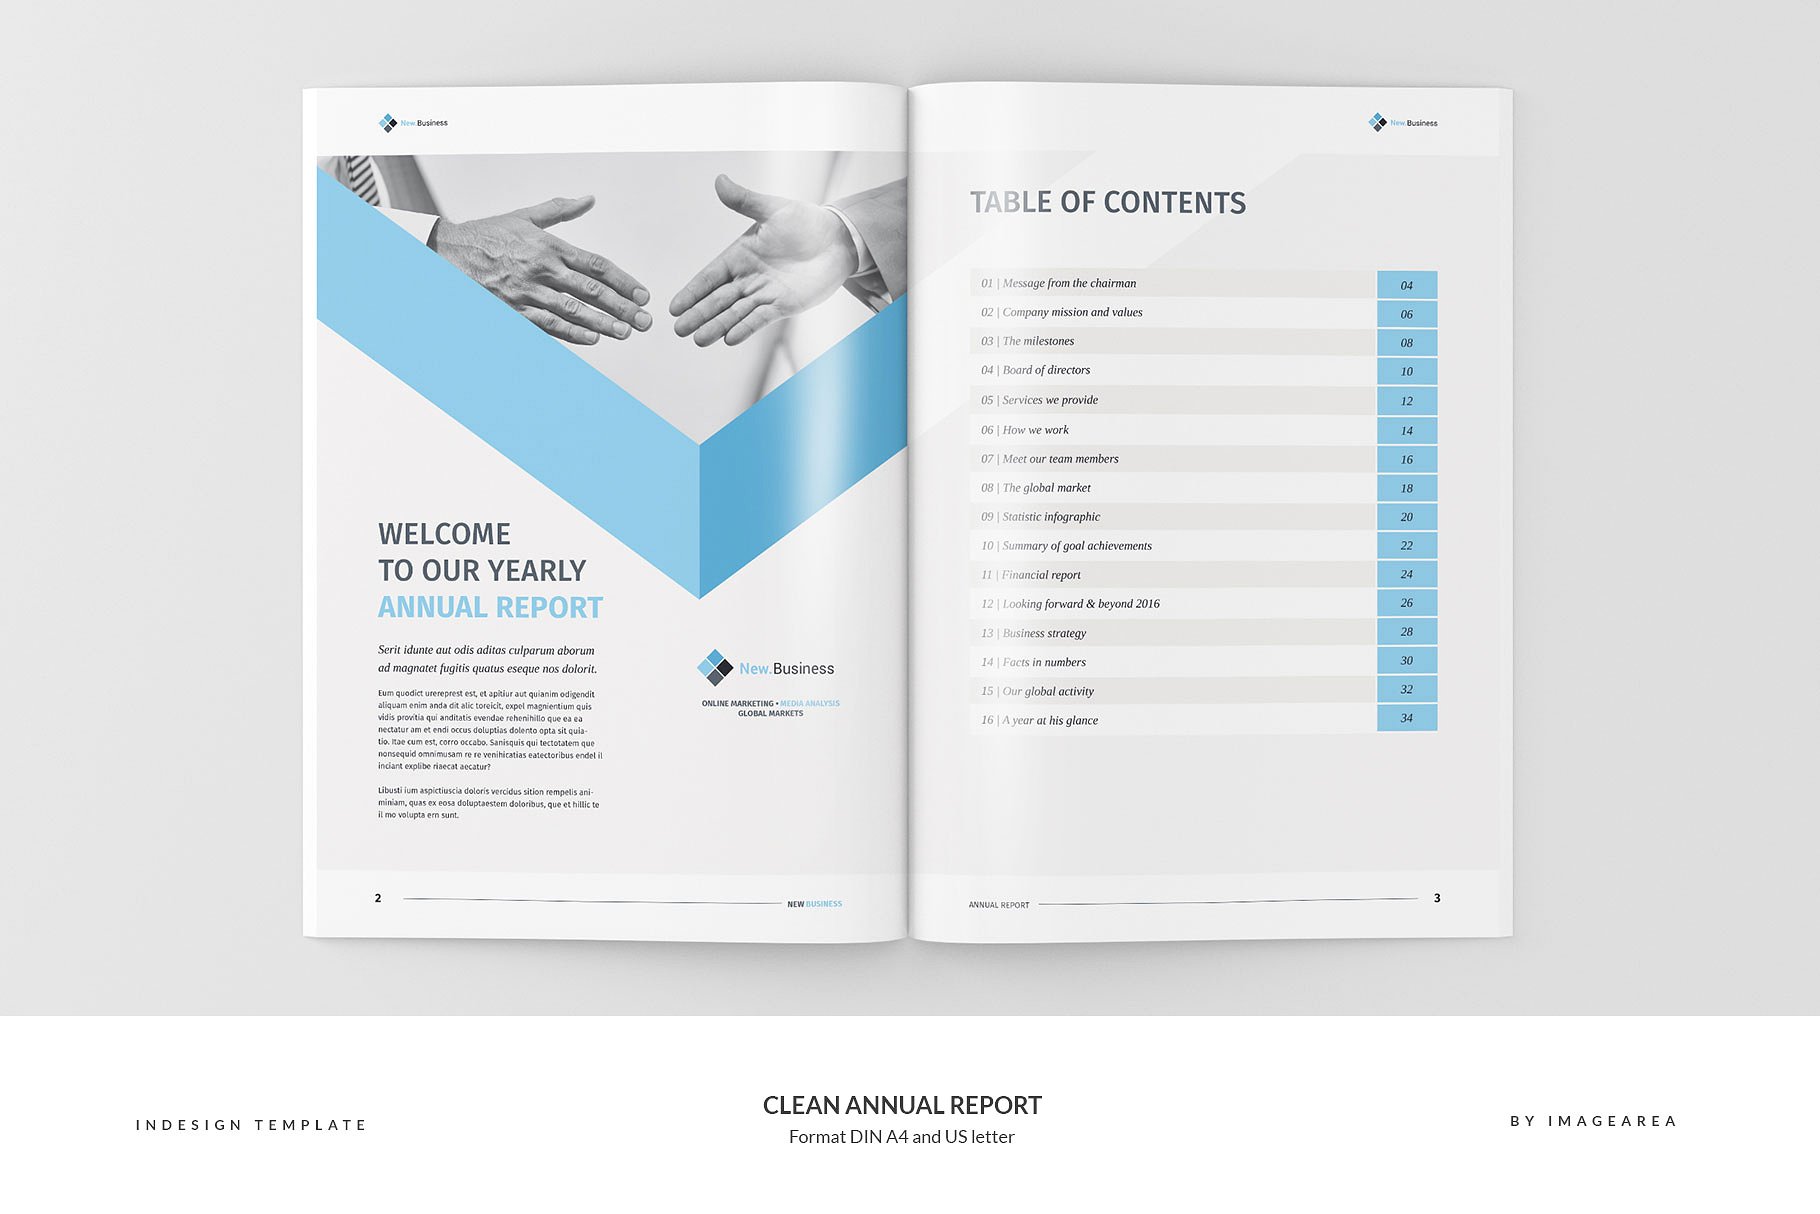 简洁专业的年报模板 Clean Annual Report插图(2)